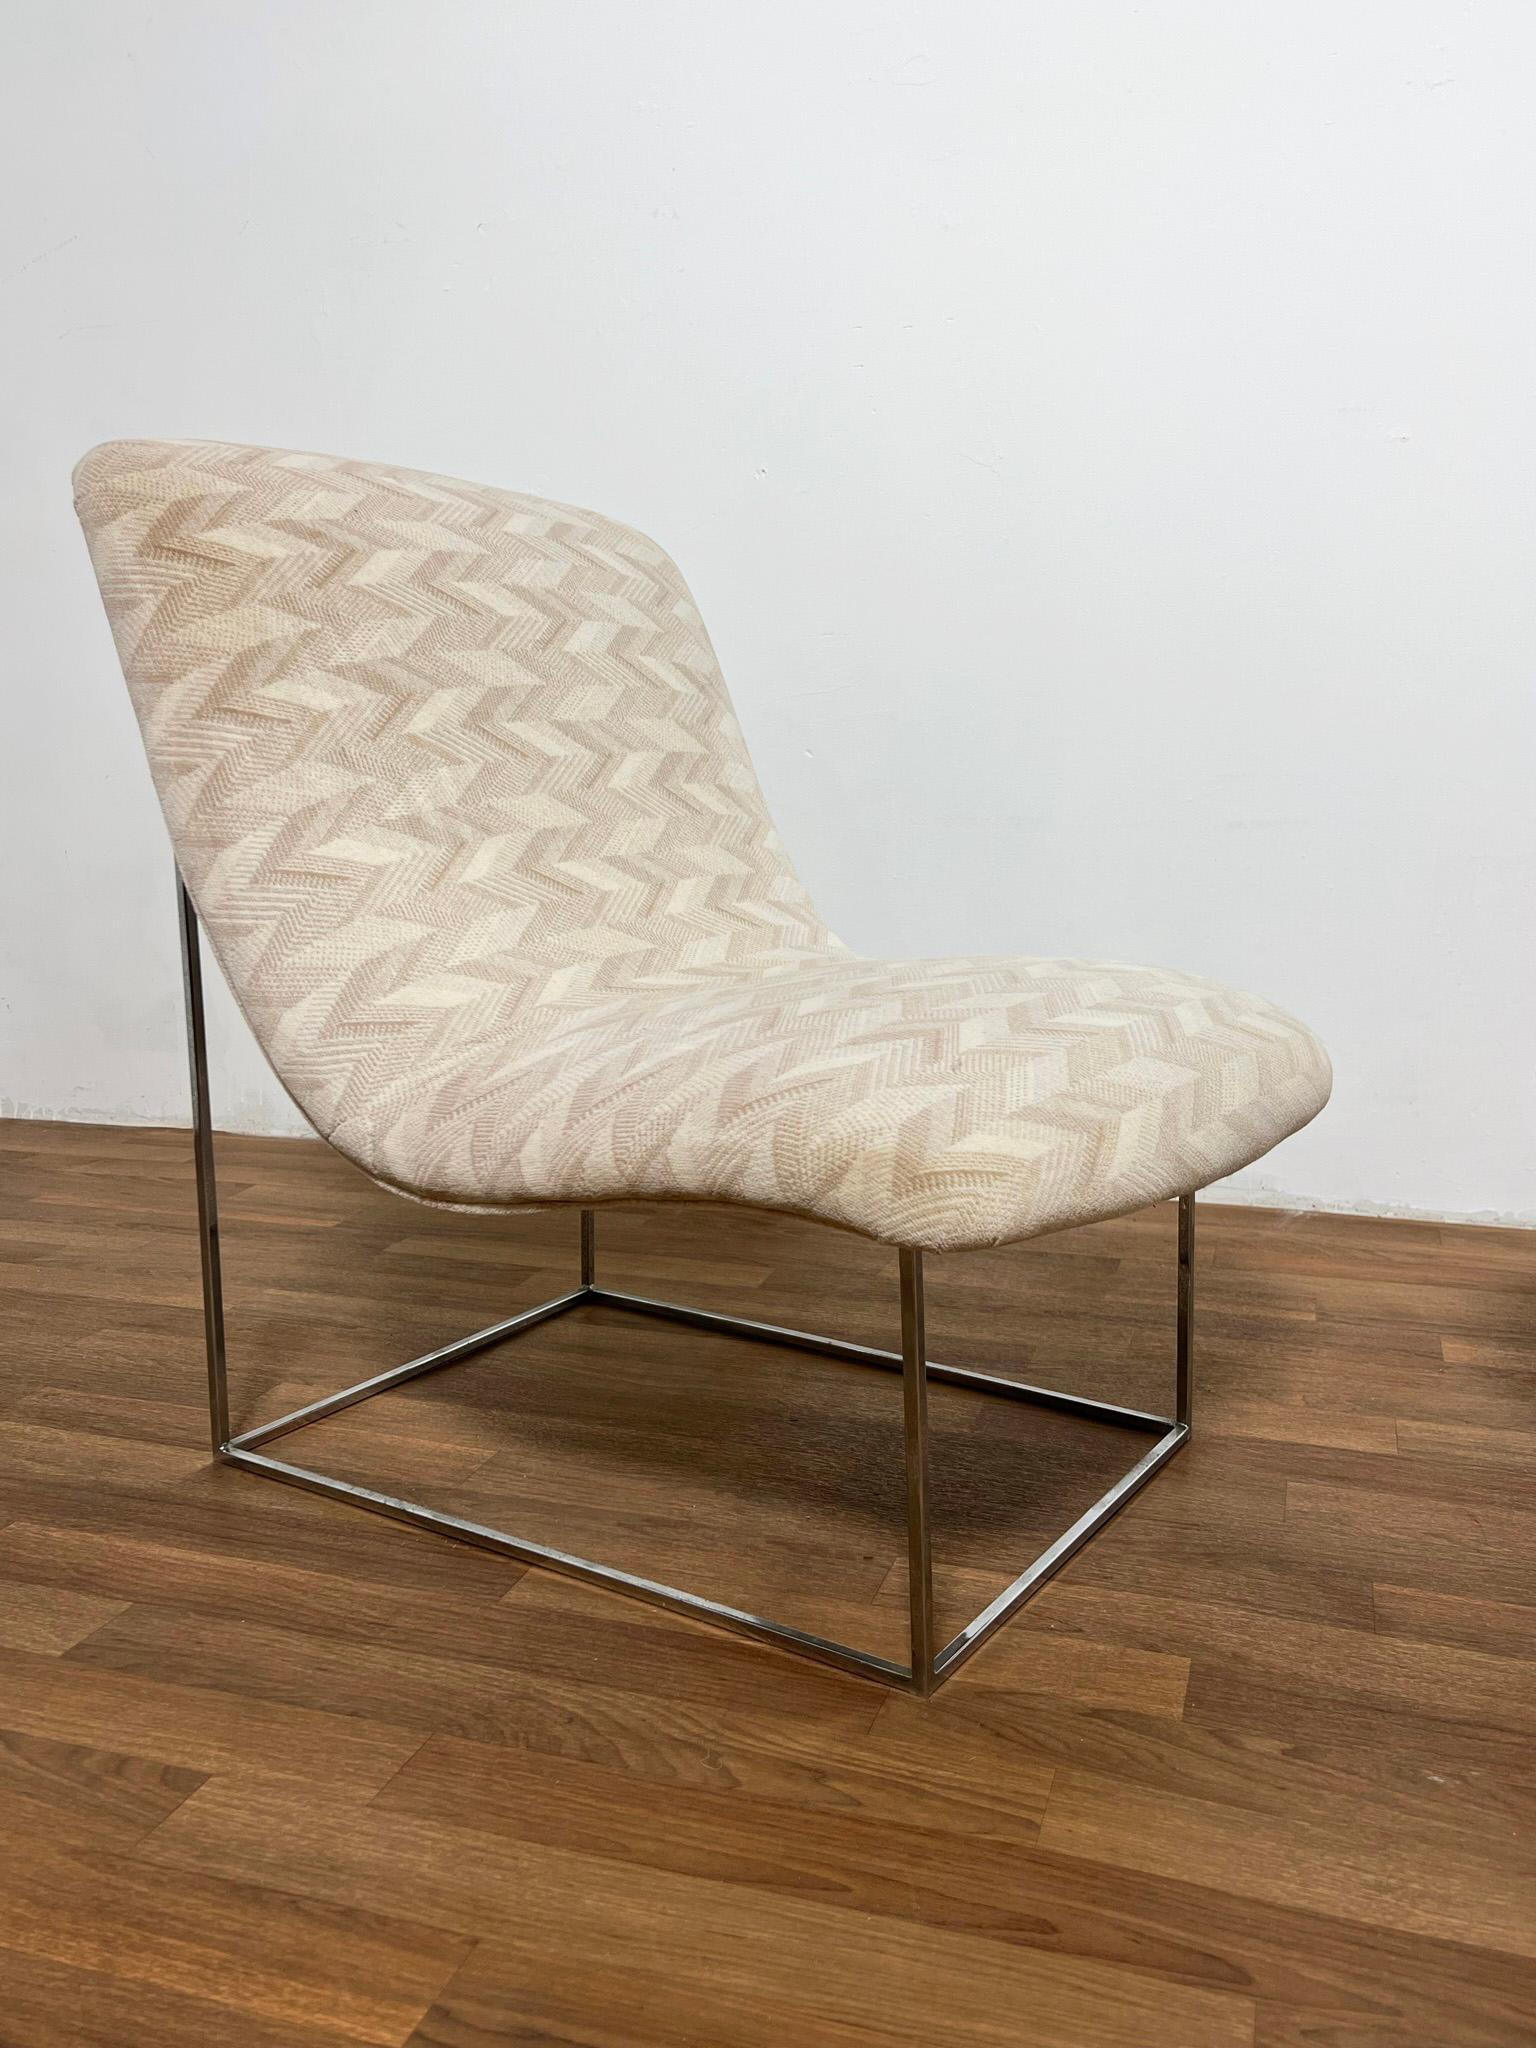 Paire de fauteuils en forme de boule sur des bases chromées par Milo Baughman, vers les années 1970.